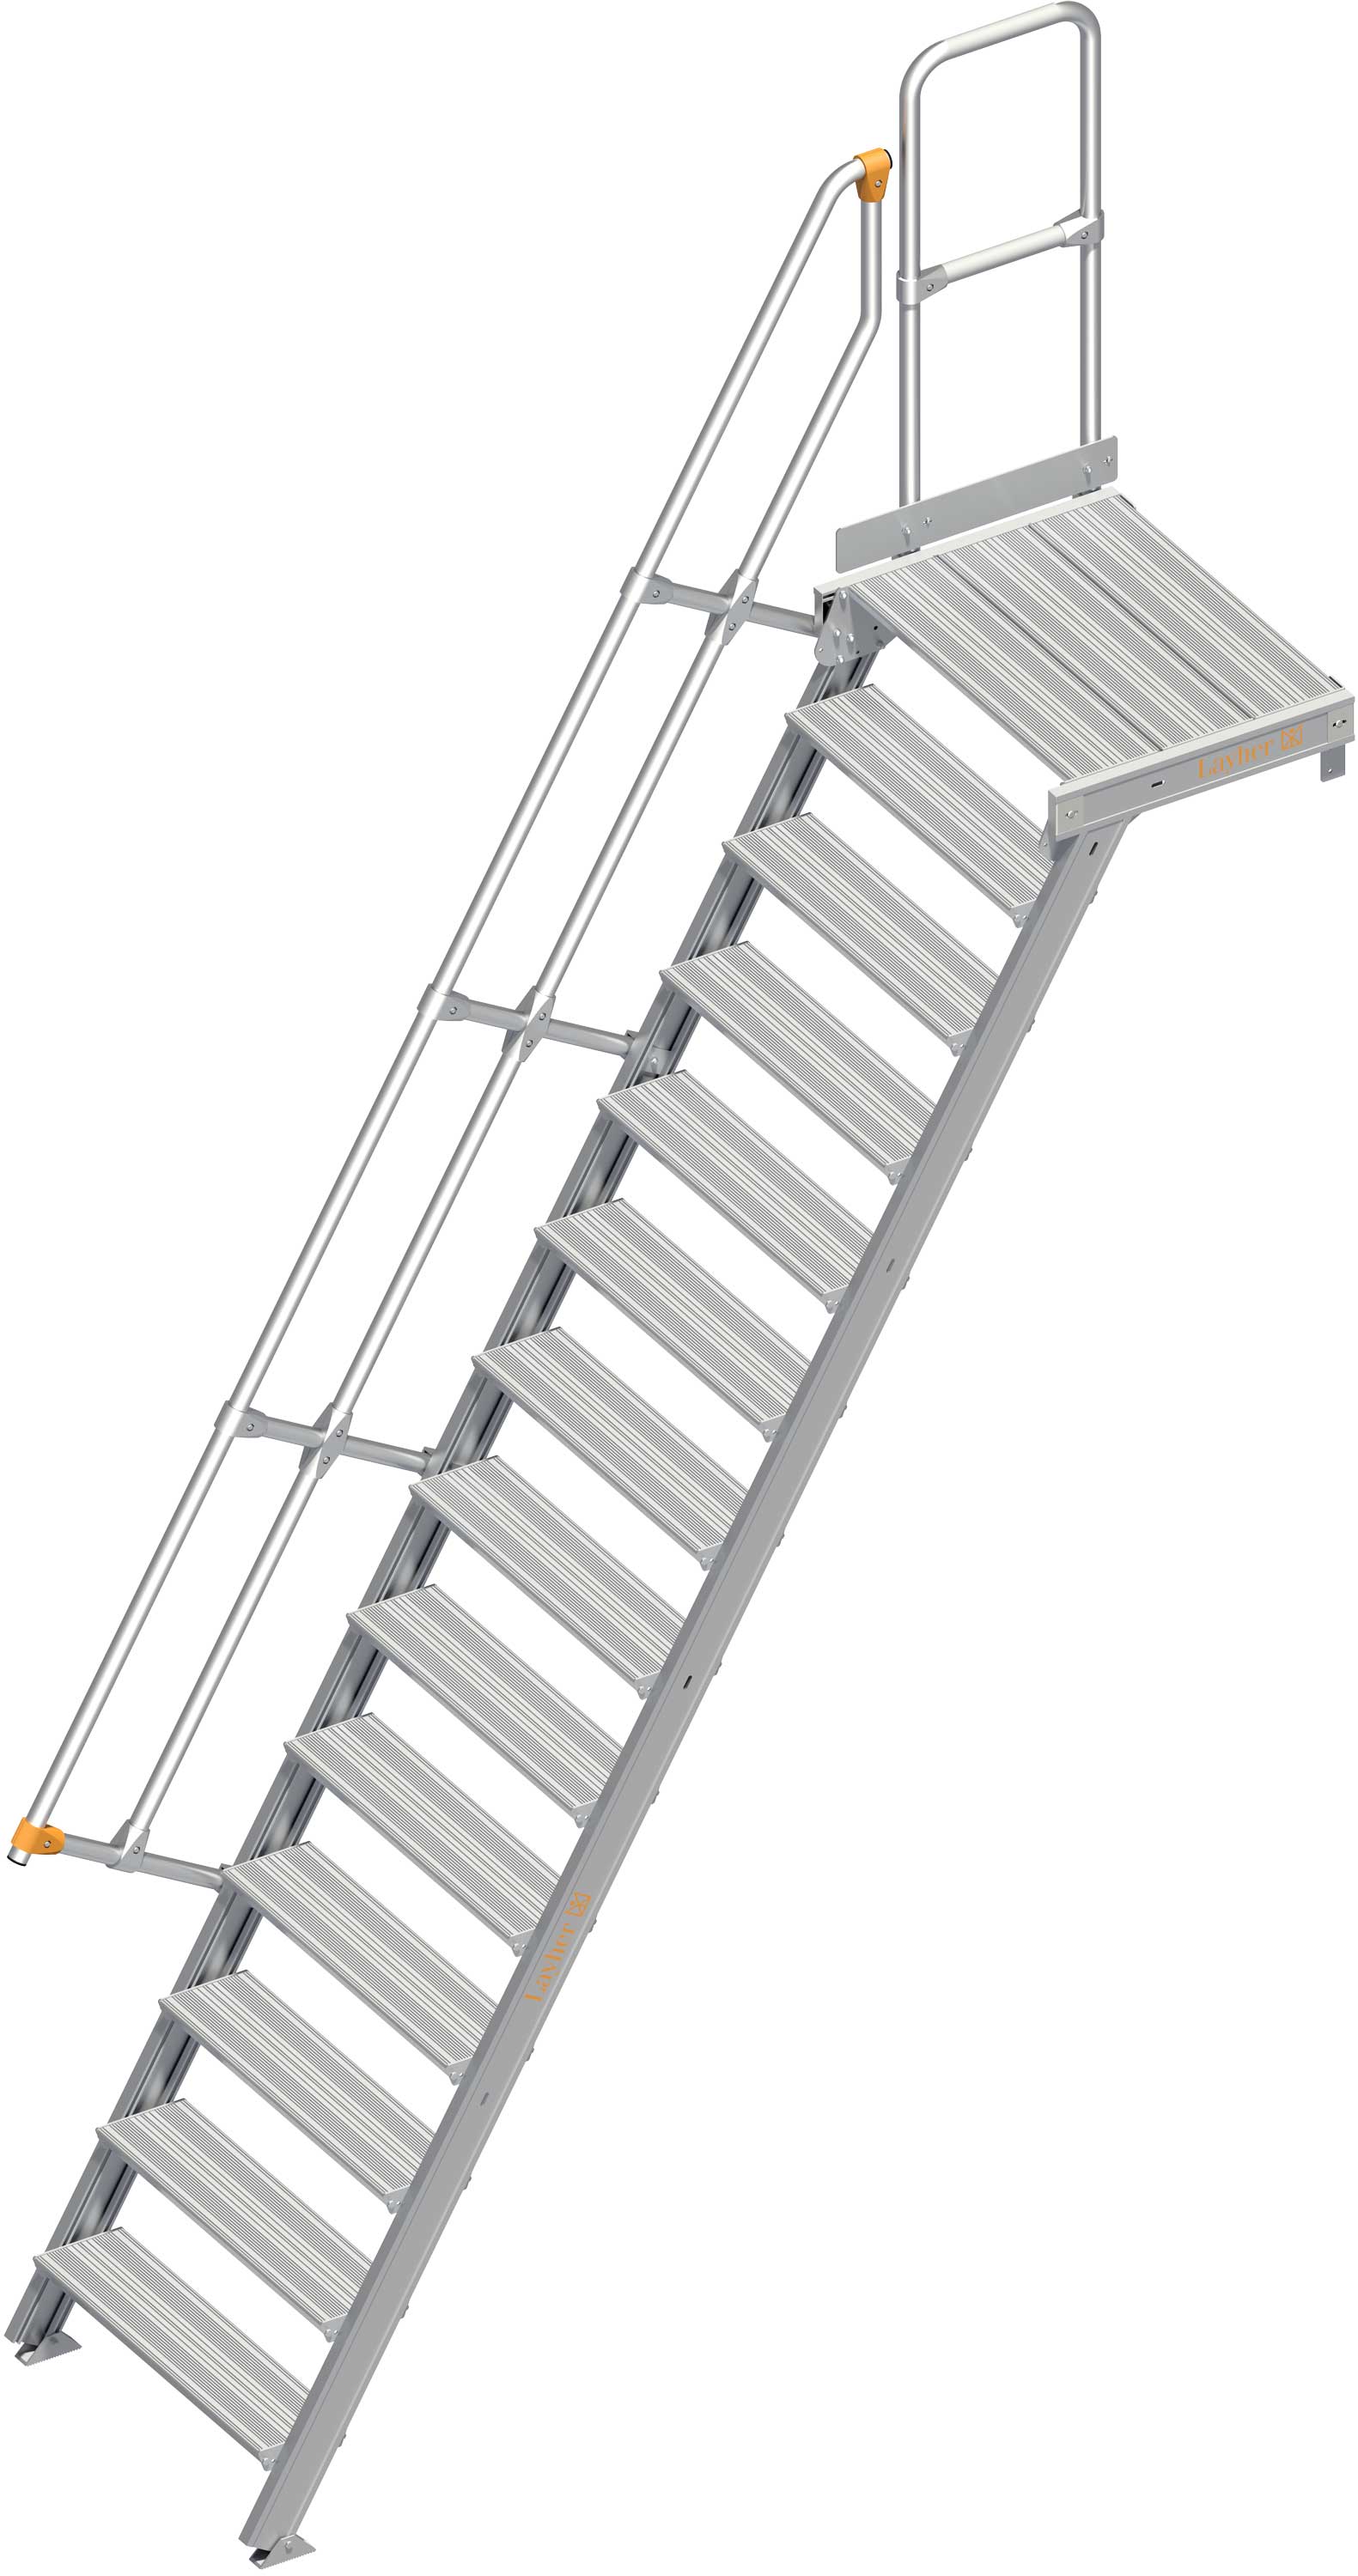 Layher Plattformtreppe 60° SG 14 Stufen - 800 mm breit